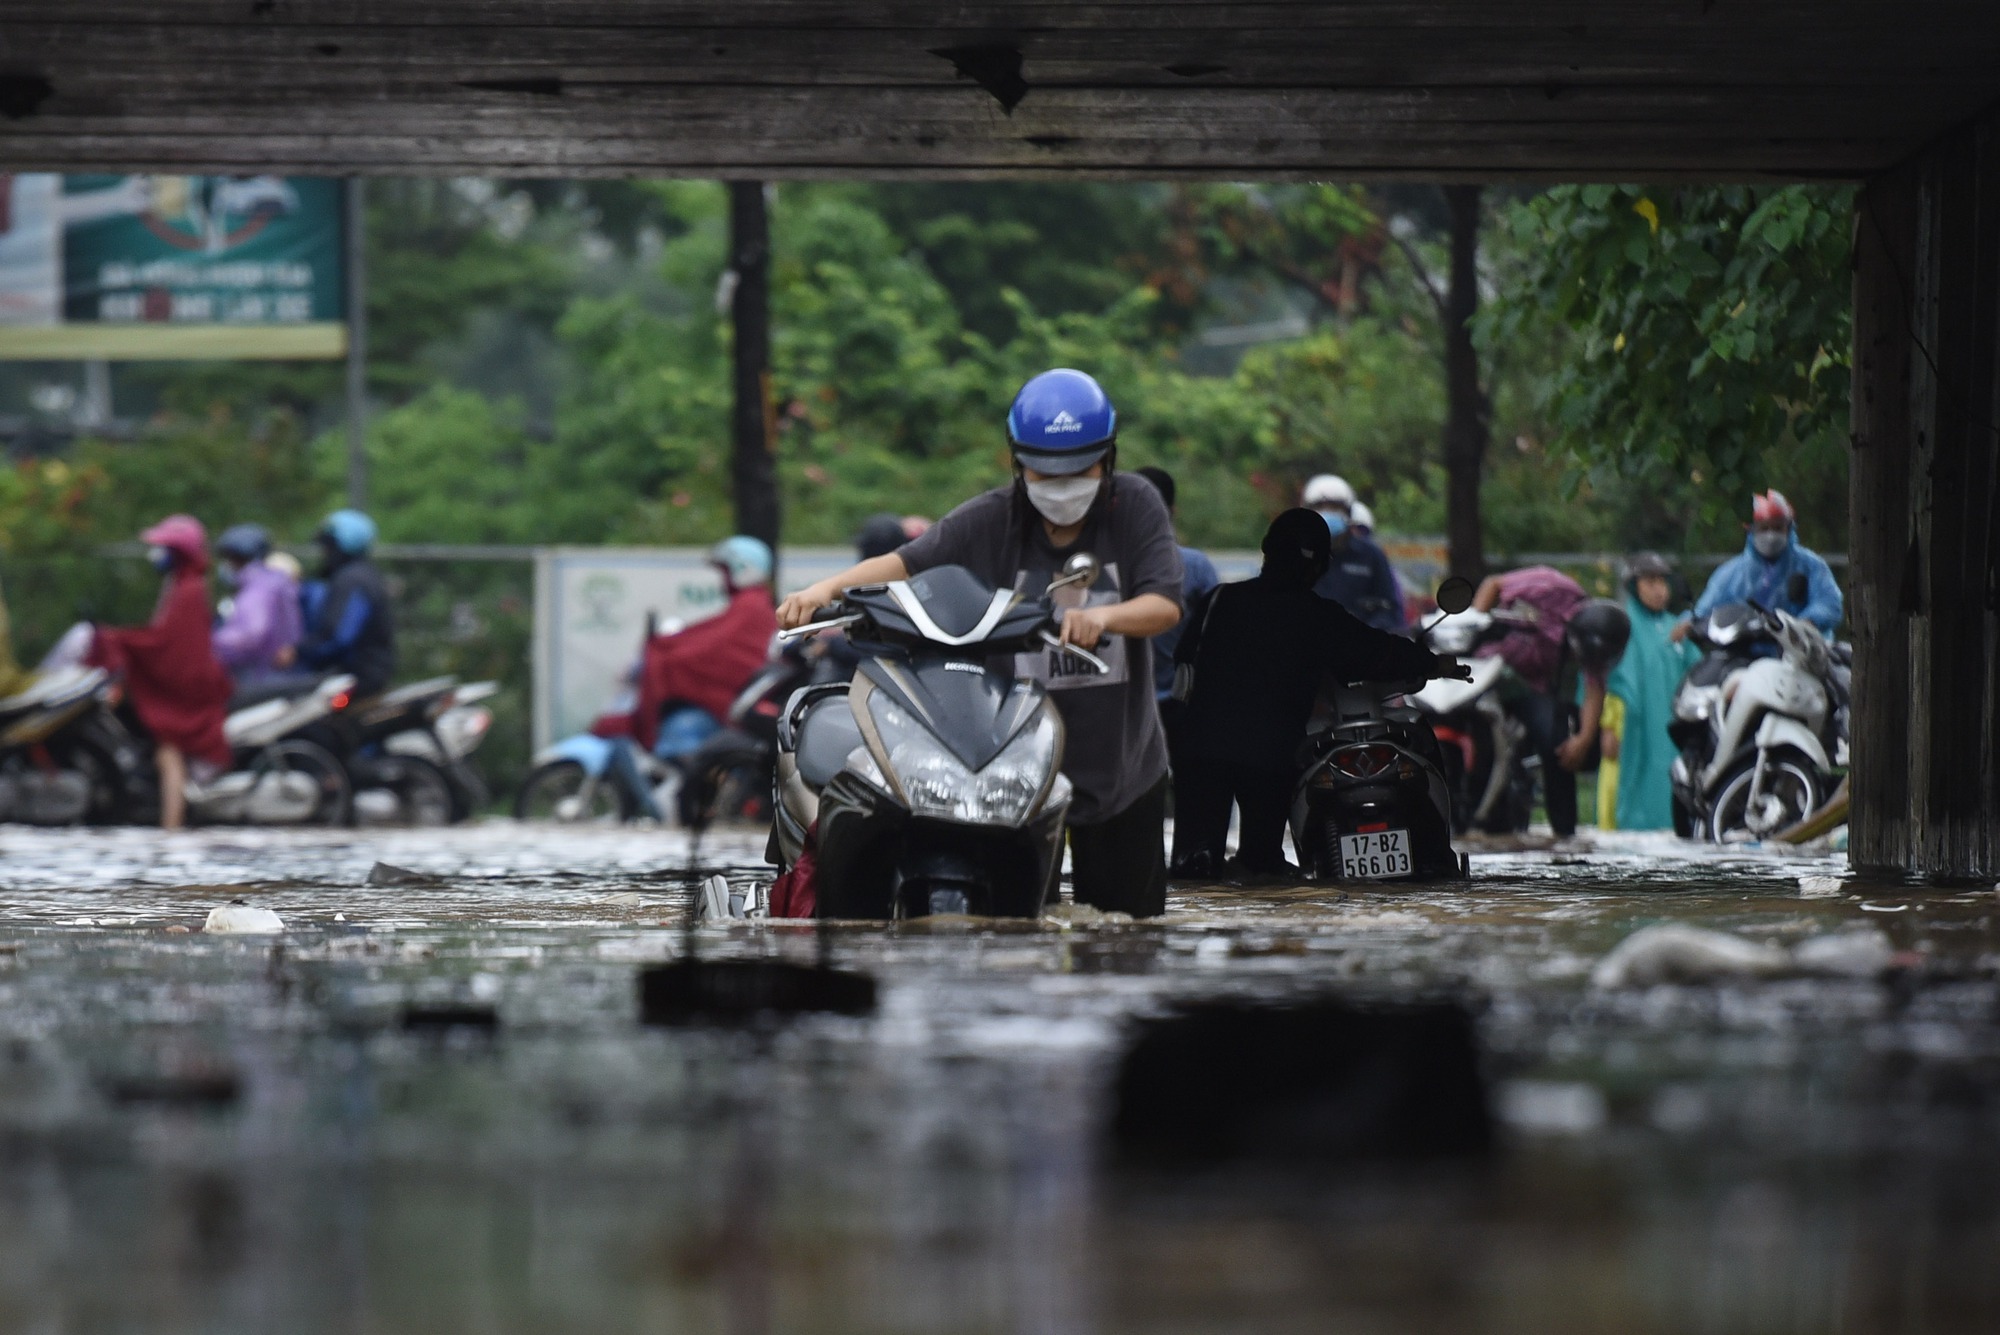 Đường gom đại lộ Thăng Long chìm trong biển nước sau trận mưa lớn - Ảnh 3.